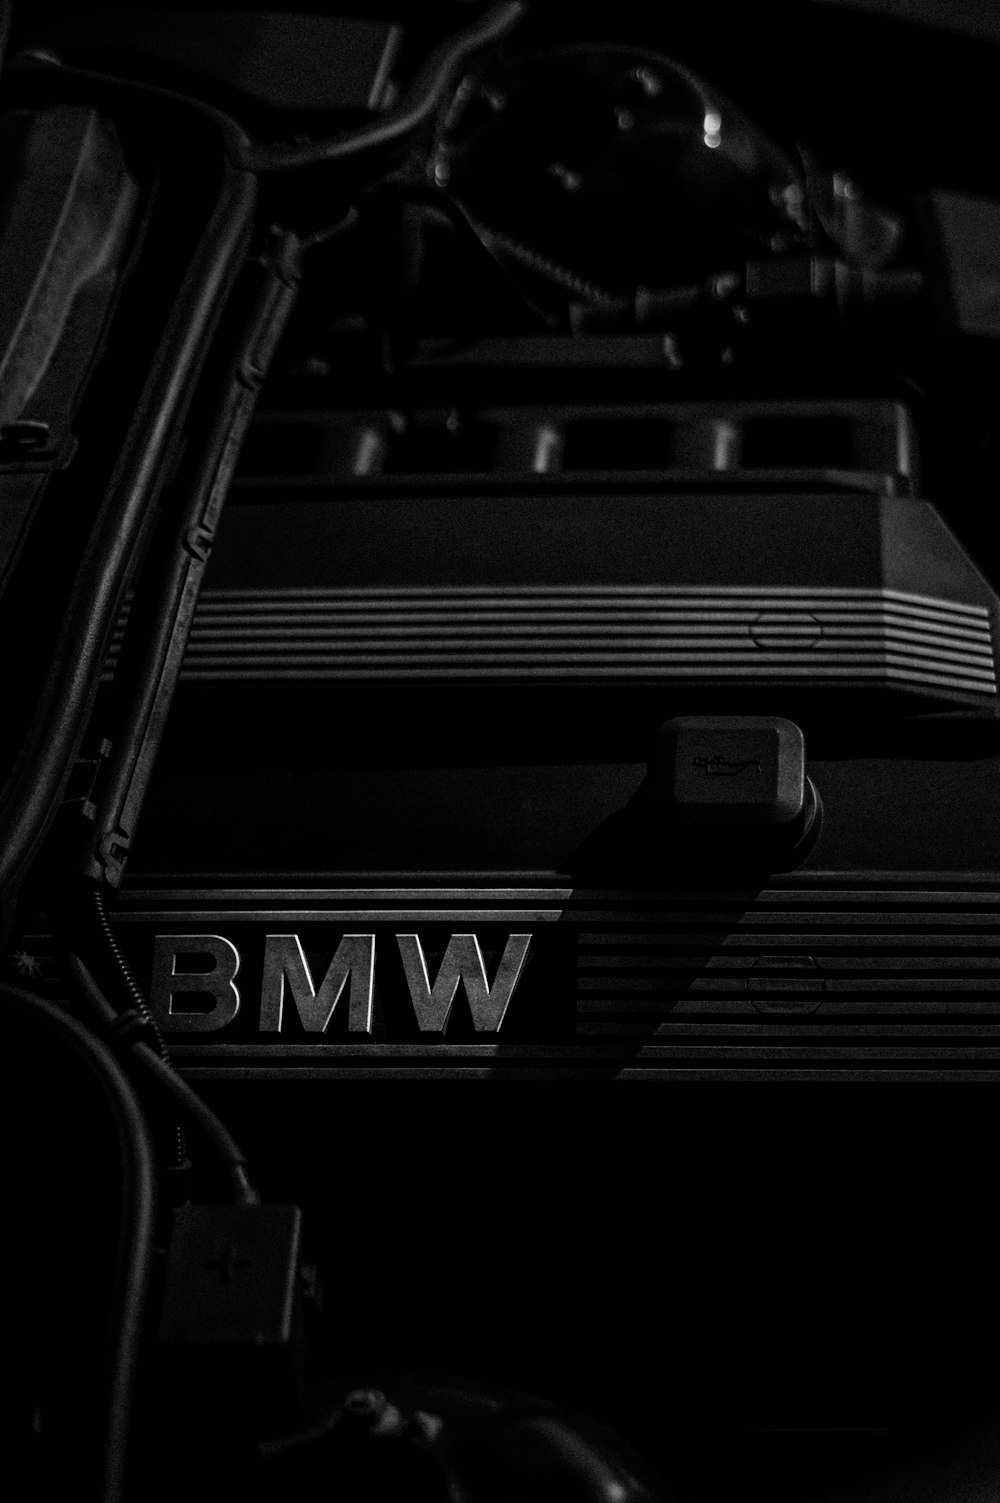 fotografia em tons de cinza do emblema BMW